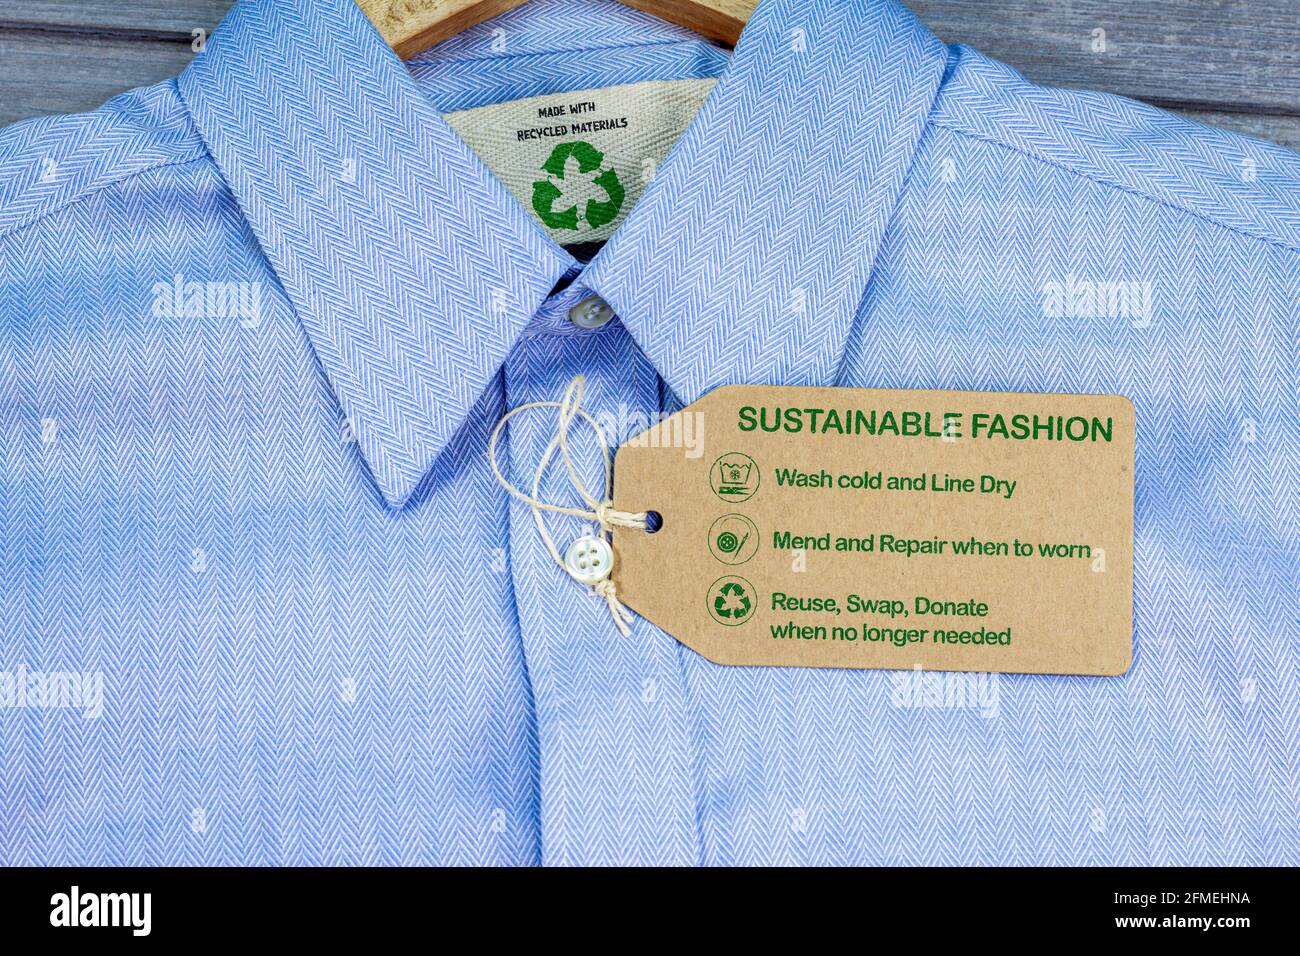 Hergestellt aus recycelten Materialien Hemd mit nachhaltigem Fashion Care Label, Mode kalt waschen, Linie trocken, reparieren und reparieren, wiederverwenden, Tauschen oder spenden Sie mit Symbolen Stockfoto